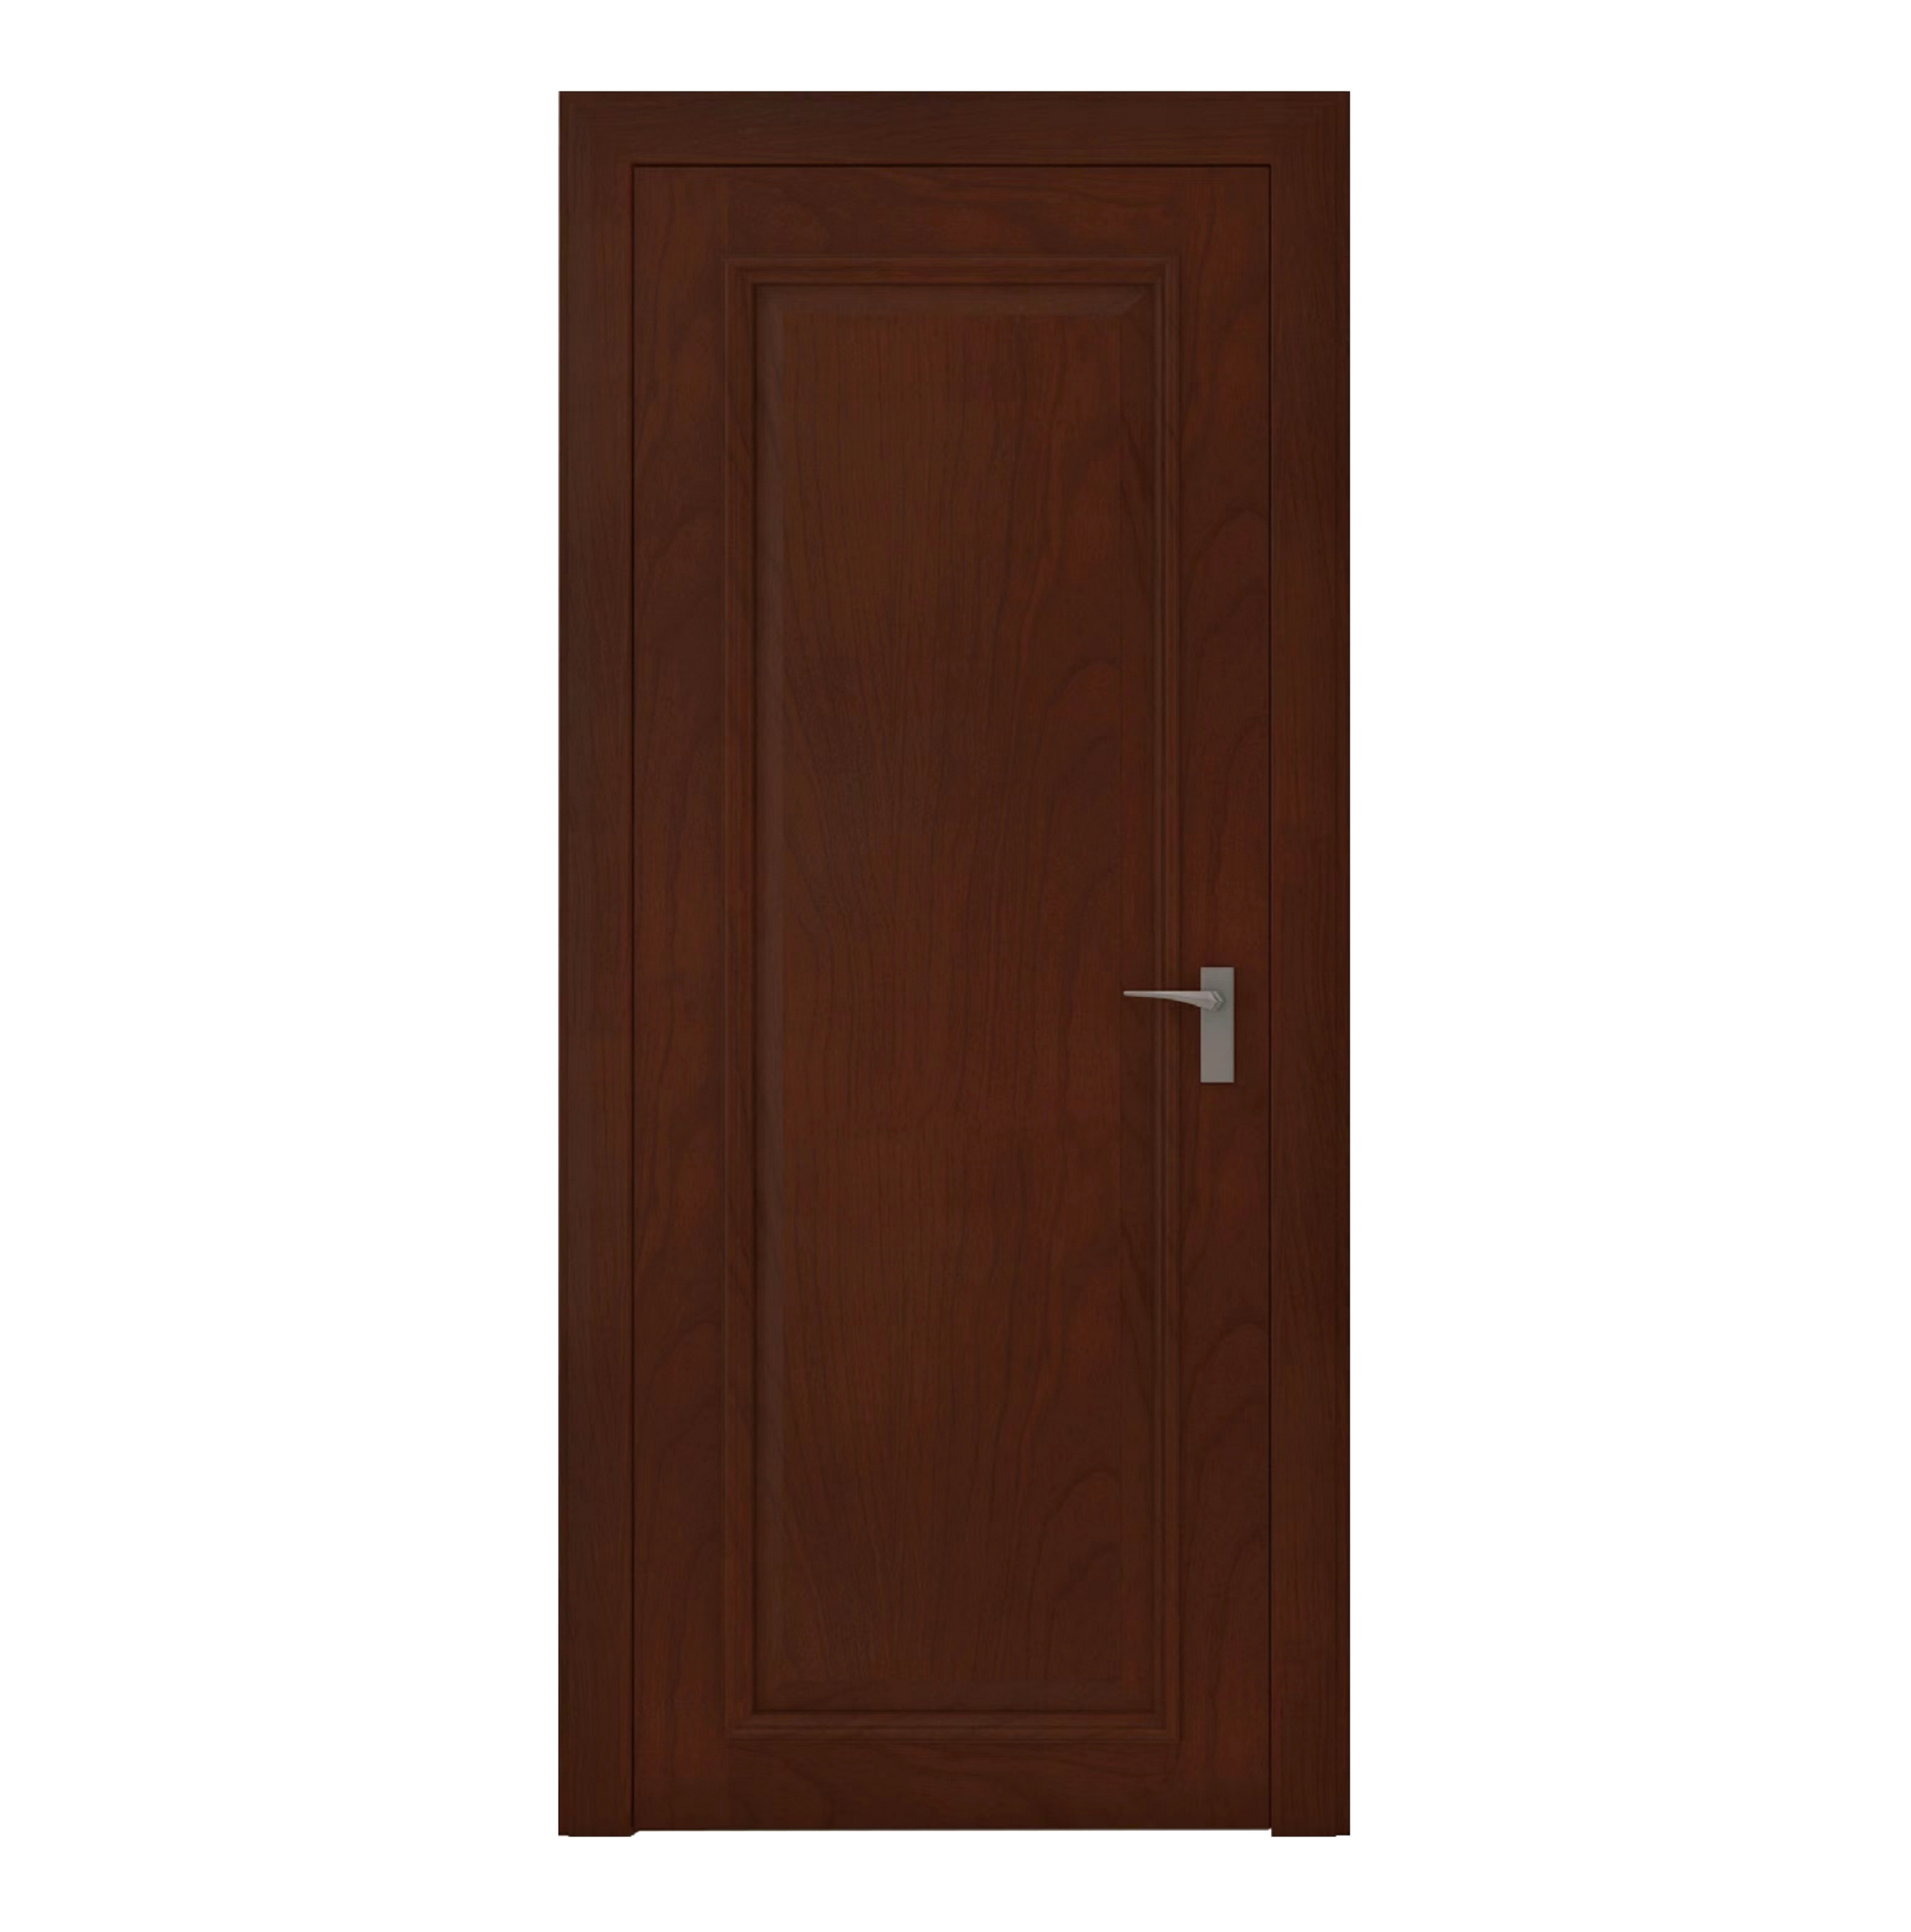 Design Solid Wood Doors Wooden Door Interior Office Modern Wood Interior Doors for Home